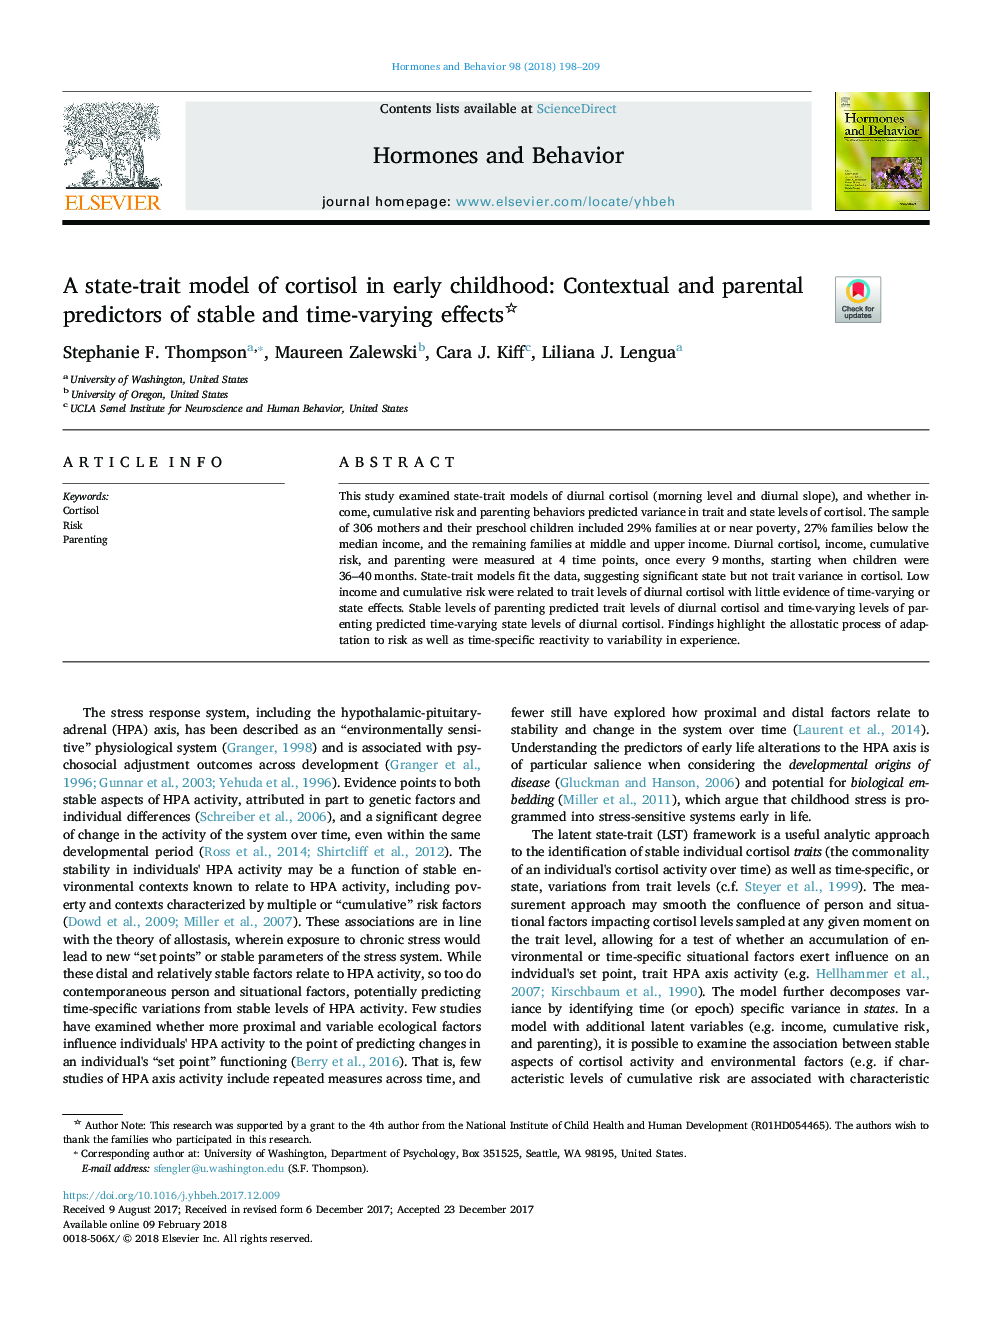 یک مدل دولتی کورتیزول در اوایل دوران کودکی: پیش بینی کننده های محتوا و والدین اثرات ثابت و متغیر زمان 